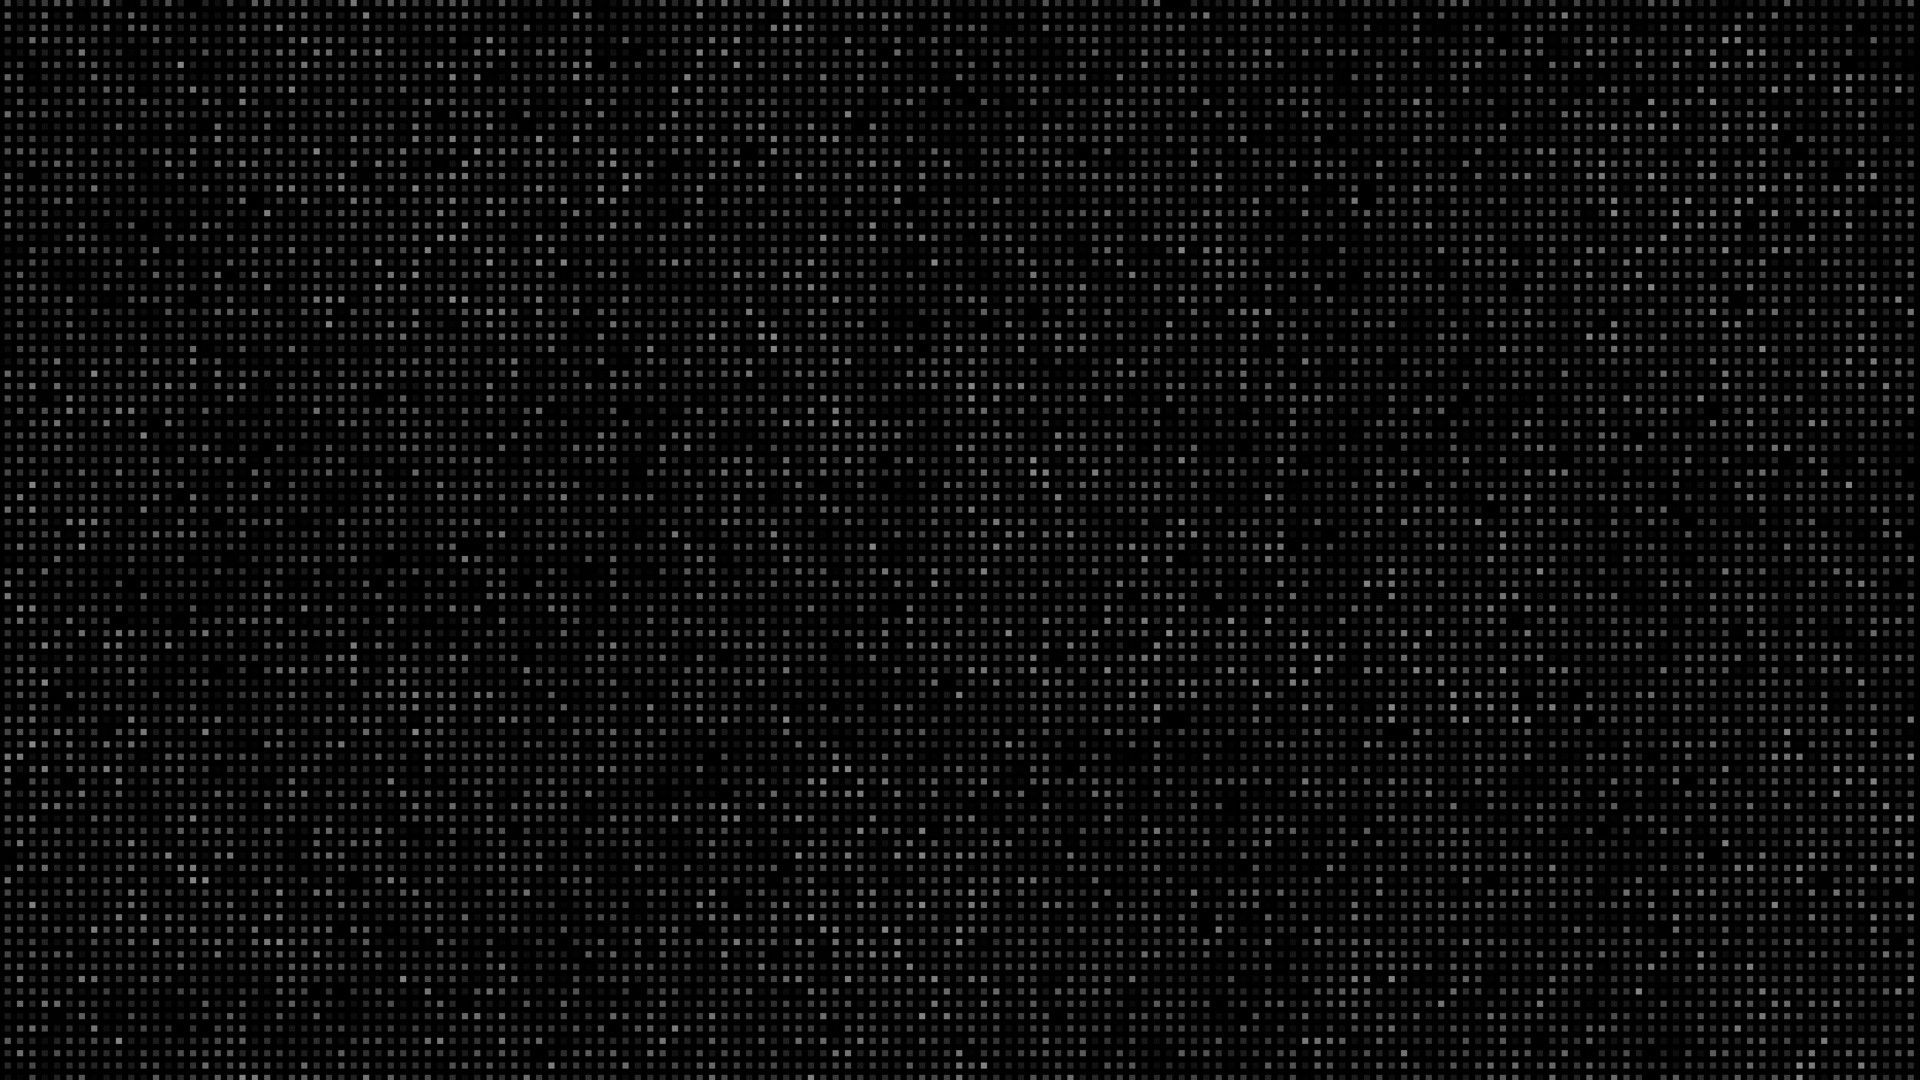 Dark Tech Wallpapers 4k Hd Dark Tech Backgrounds On Wallpaperbat